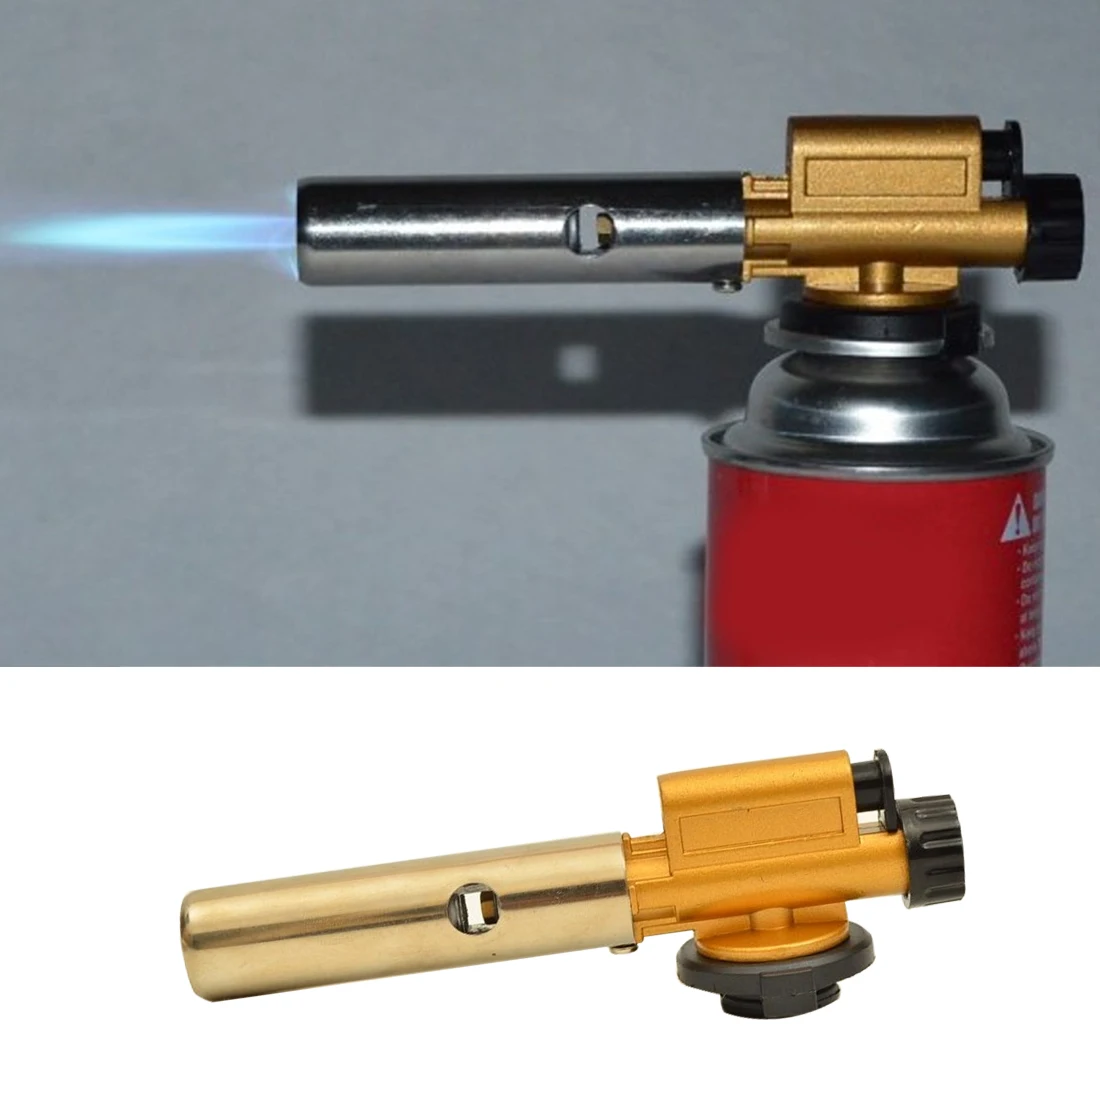 

Медный газовый газовая горелка-пистолет с пьезоподжигом, хорошее электронное зажигание фонарь для кемпинга, пикника, барбекю